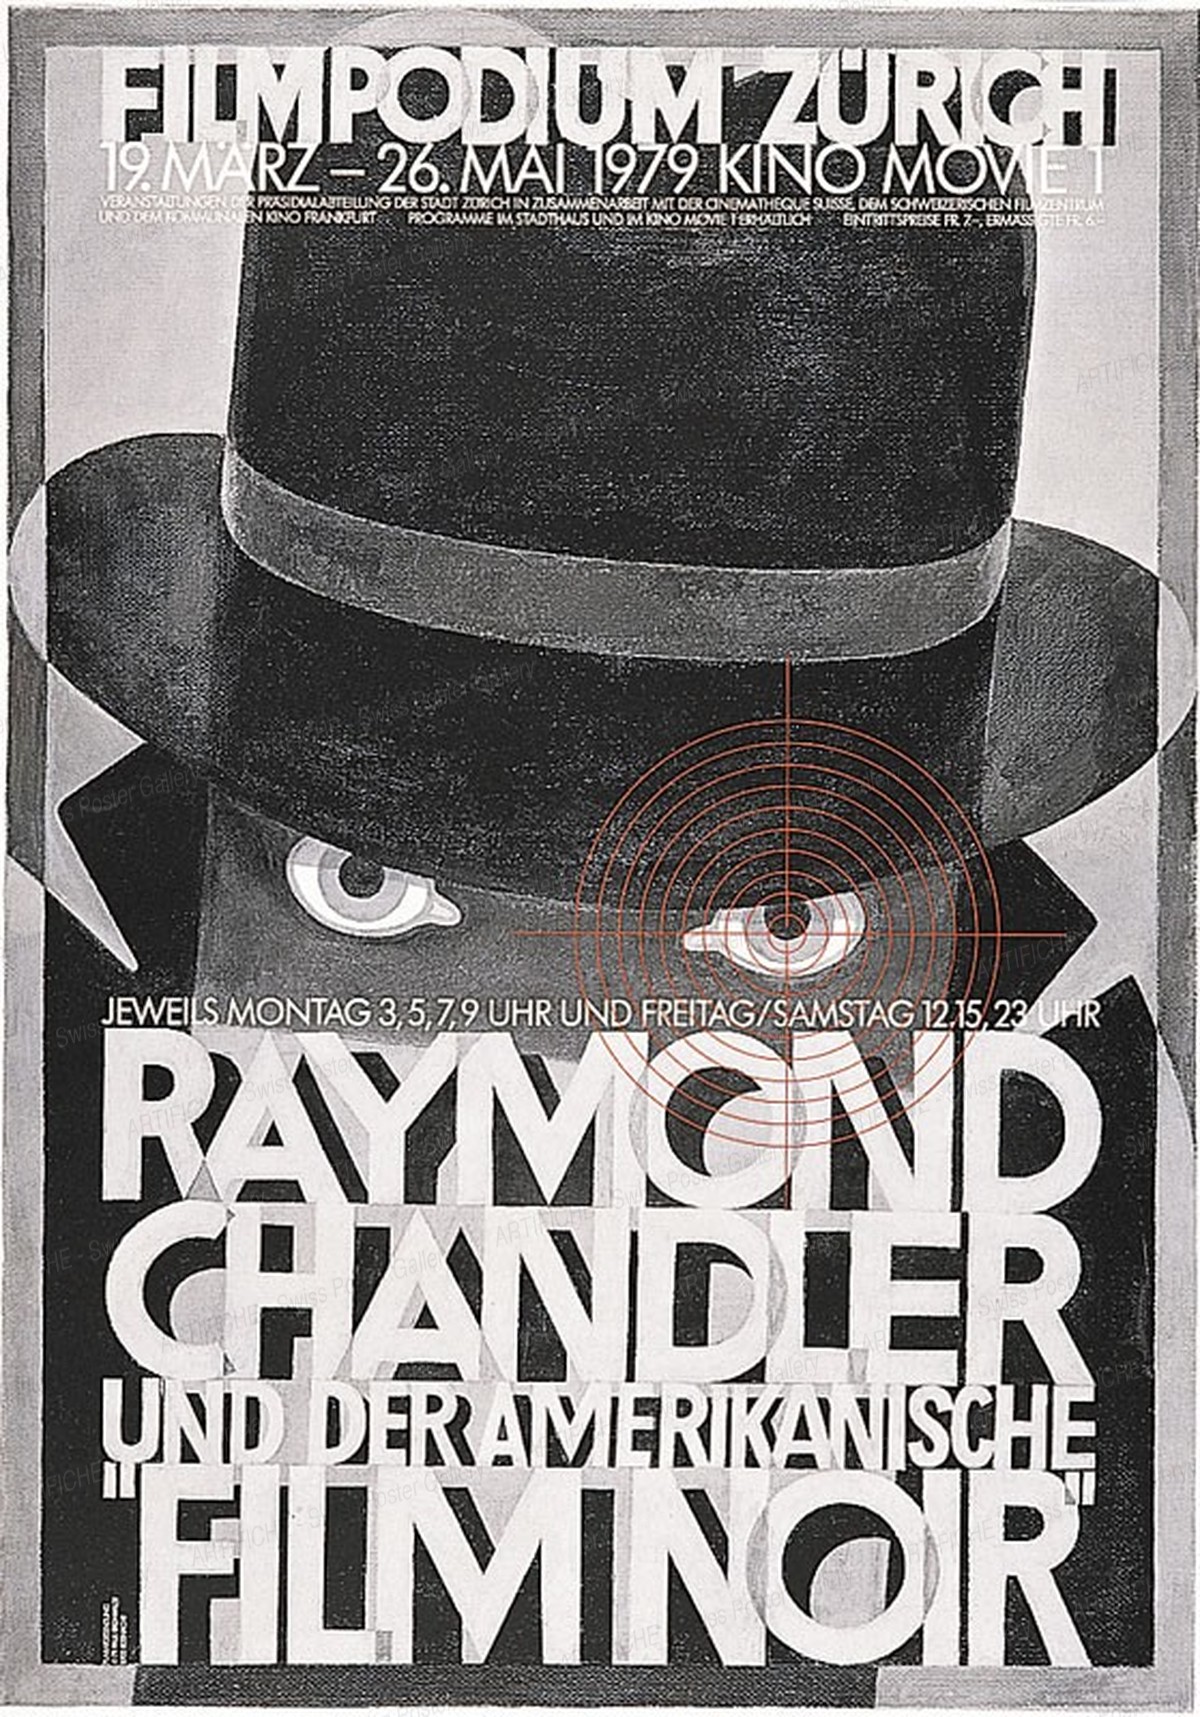 Filmpodium Zürich – Raymond Chandler und der Amerikanische Film Noir, Paul Brühwiler